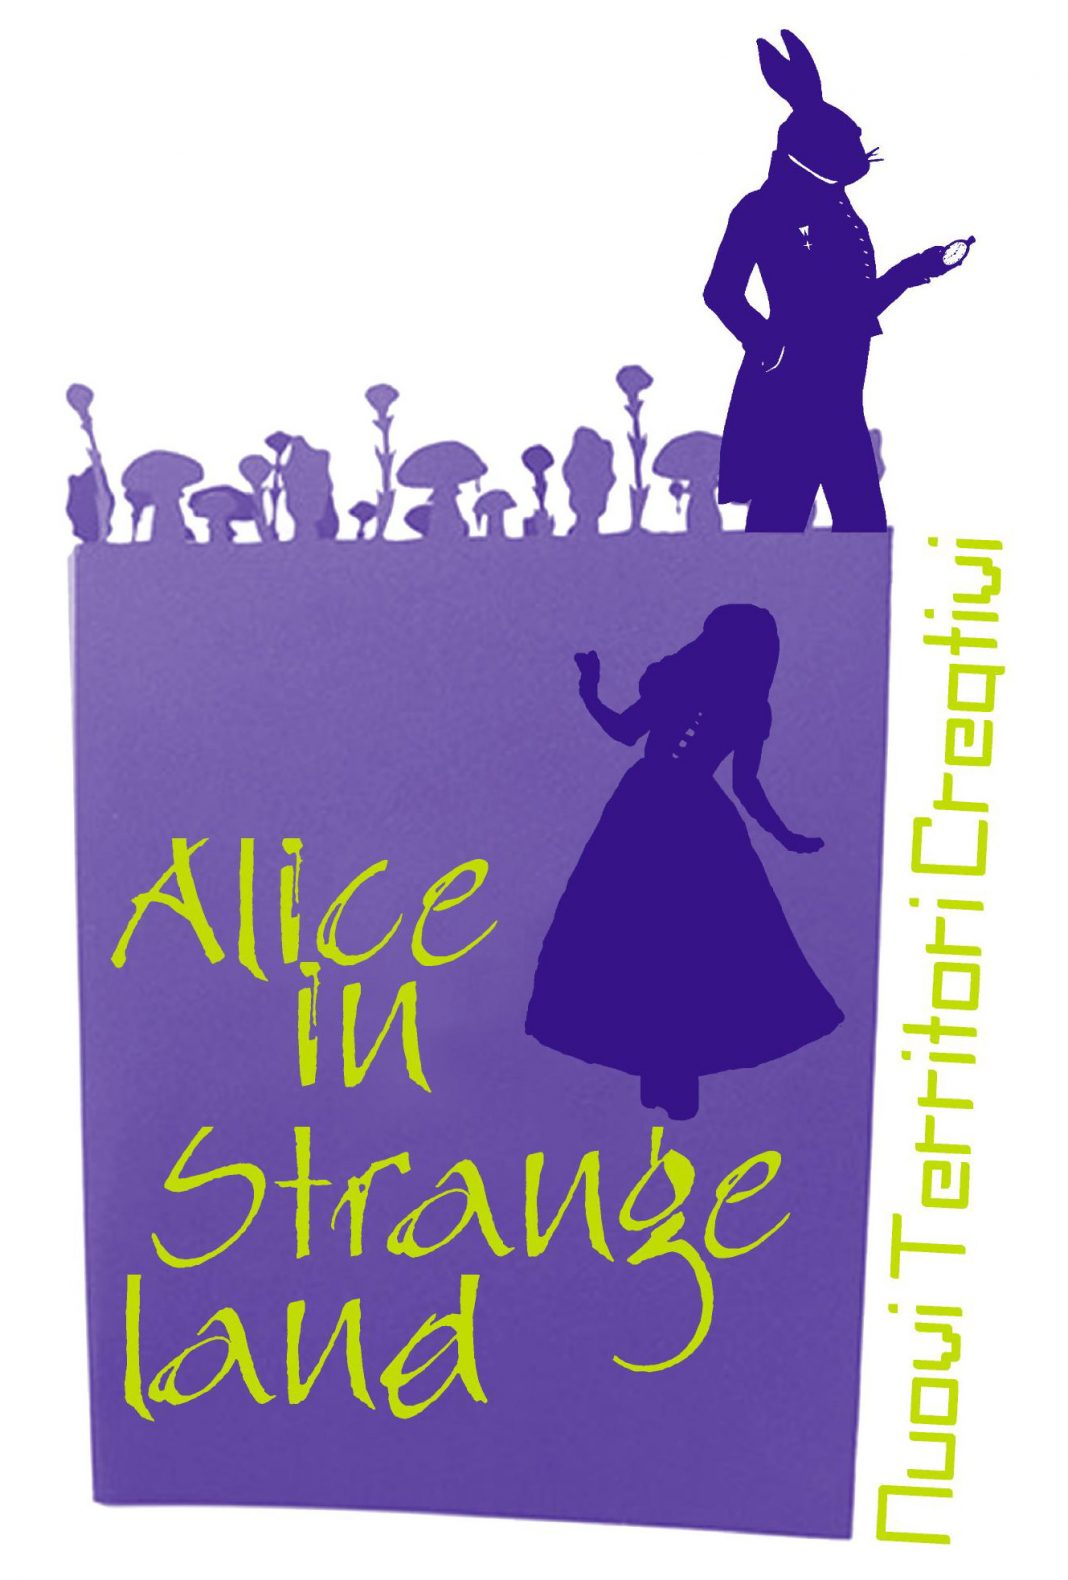 Alice in Strangelandhttps://www.exibart.com/repository/media/eventi/2012/06/alice-in-strangeland-1068x1580.jpg